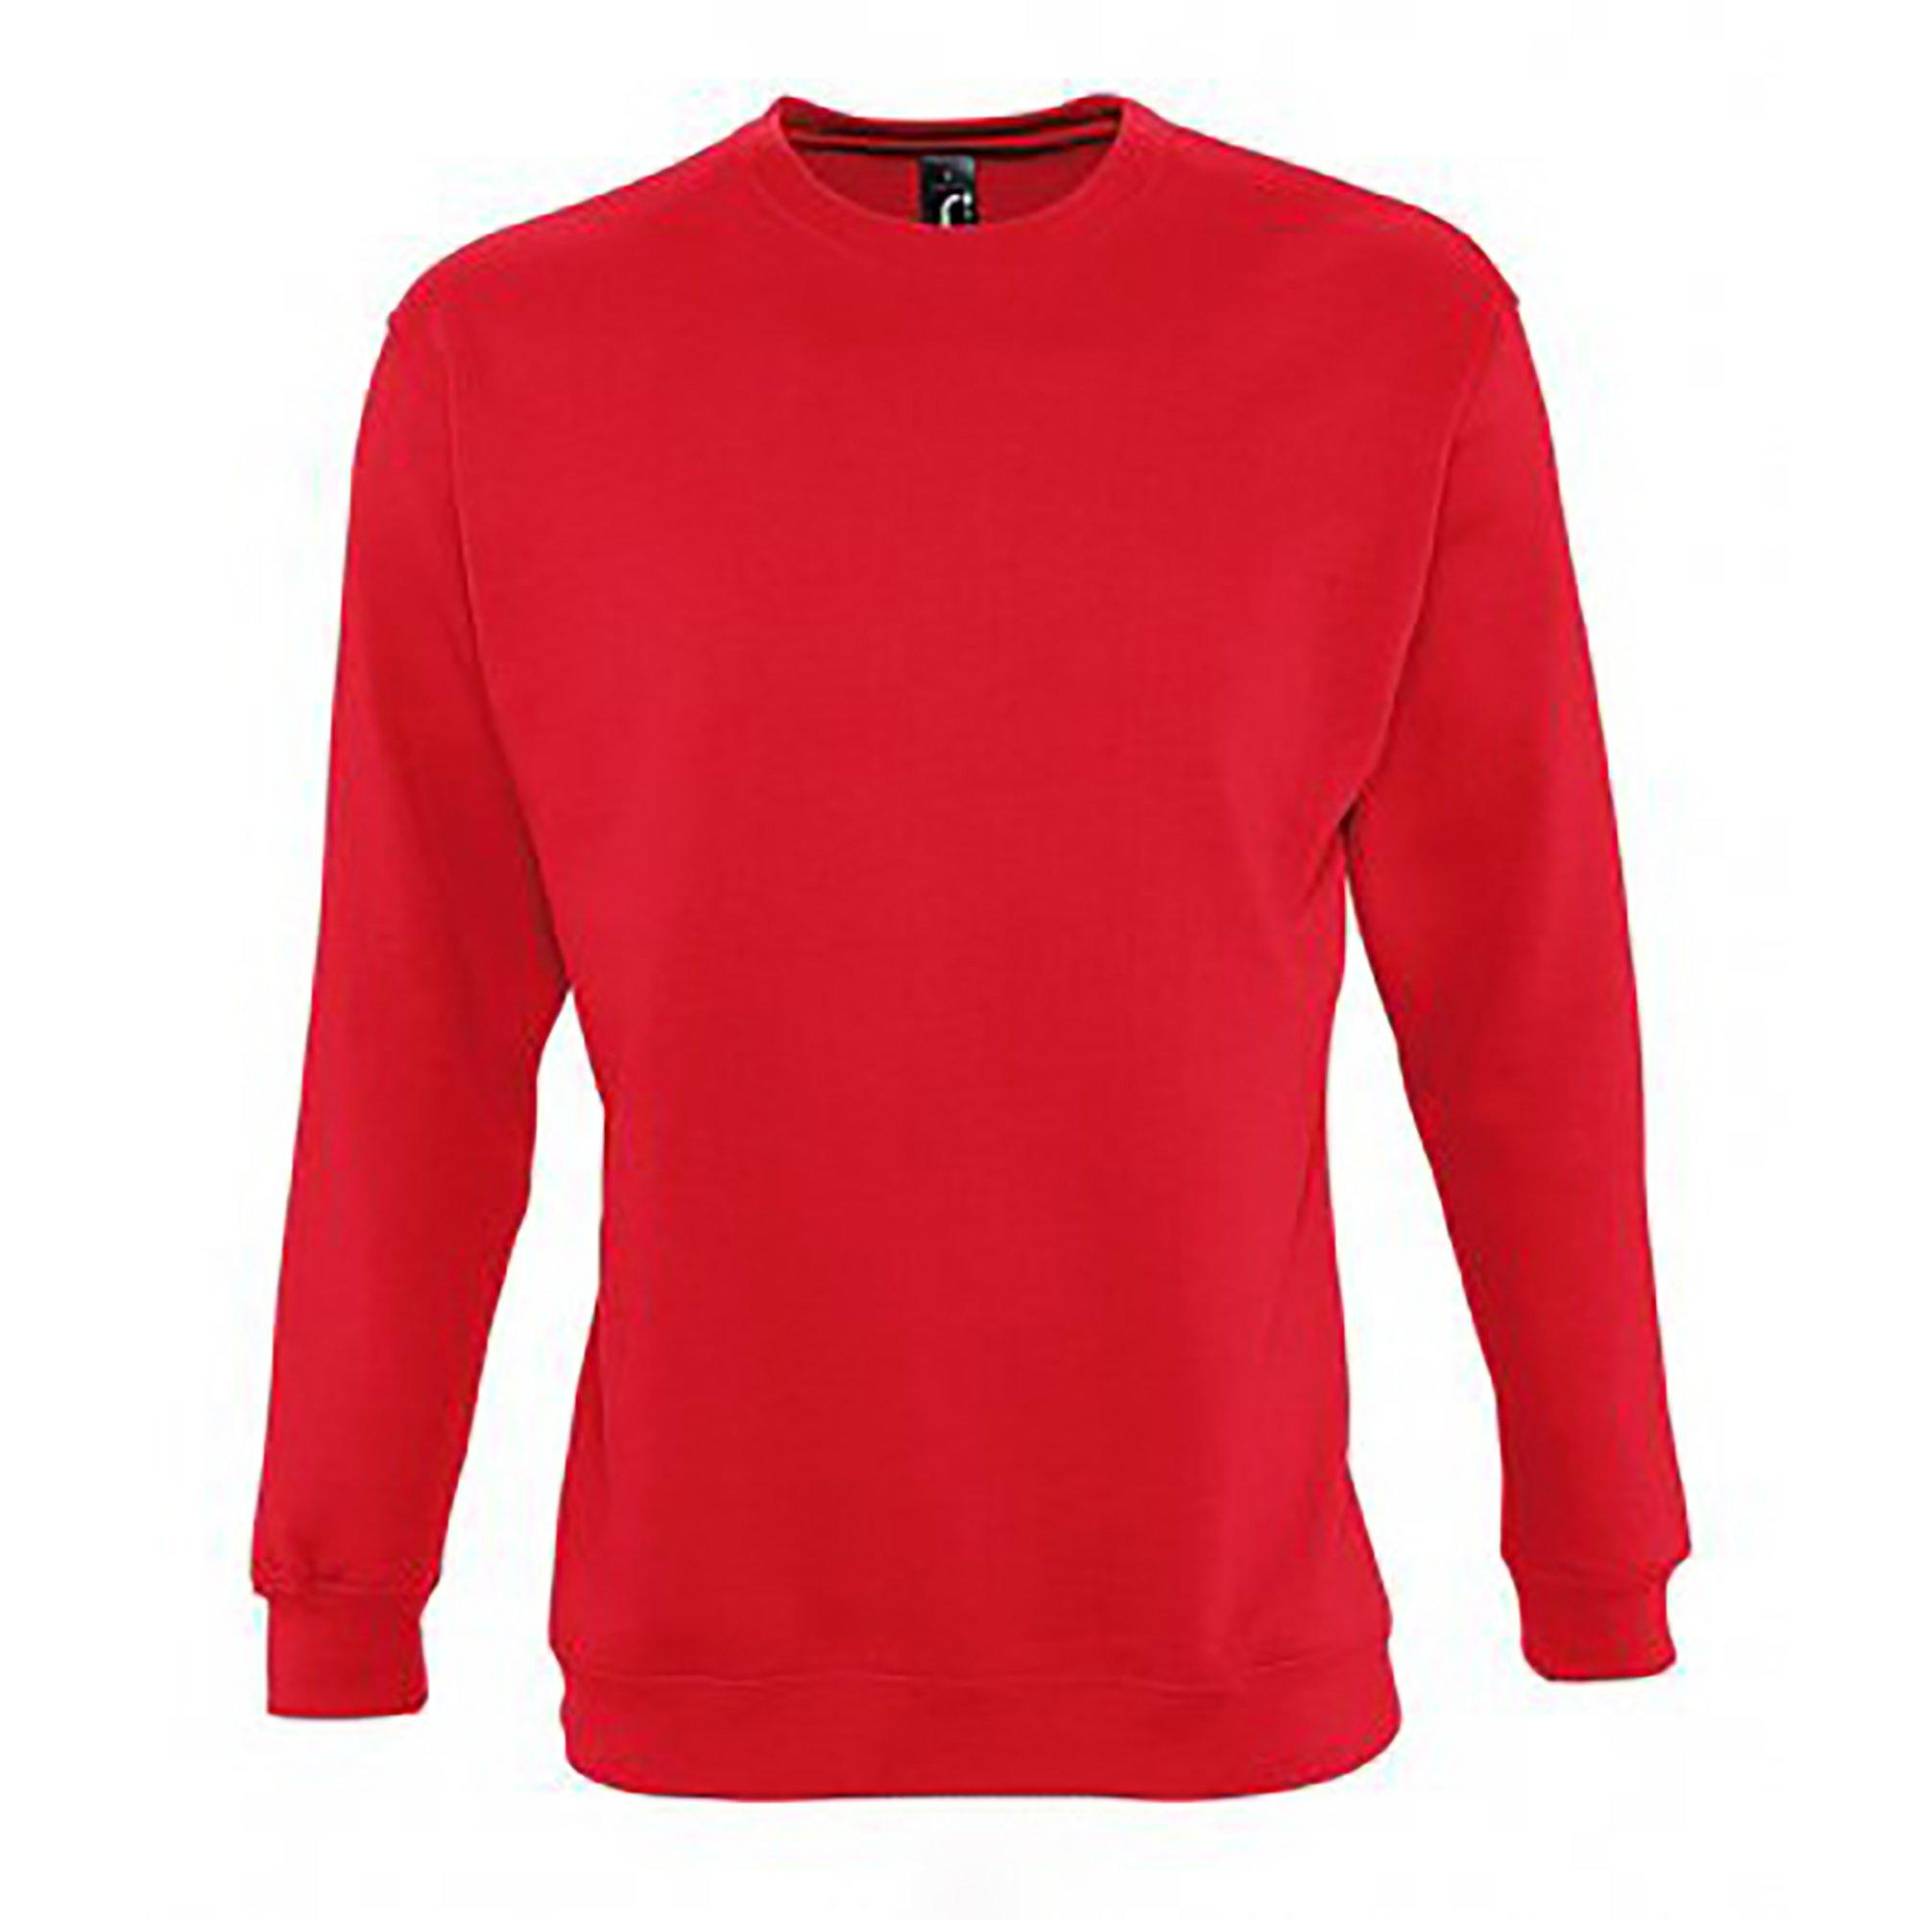 Supreme Sweatshirt Damen Rot Bunt L von SOLS